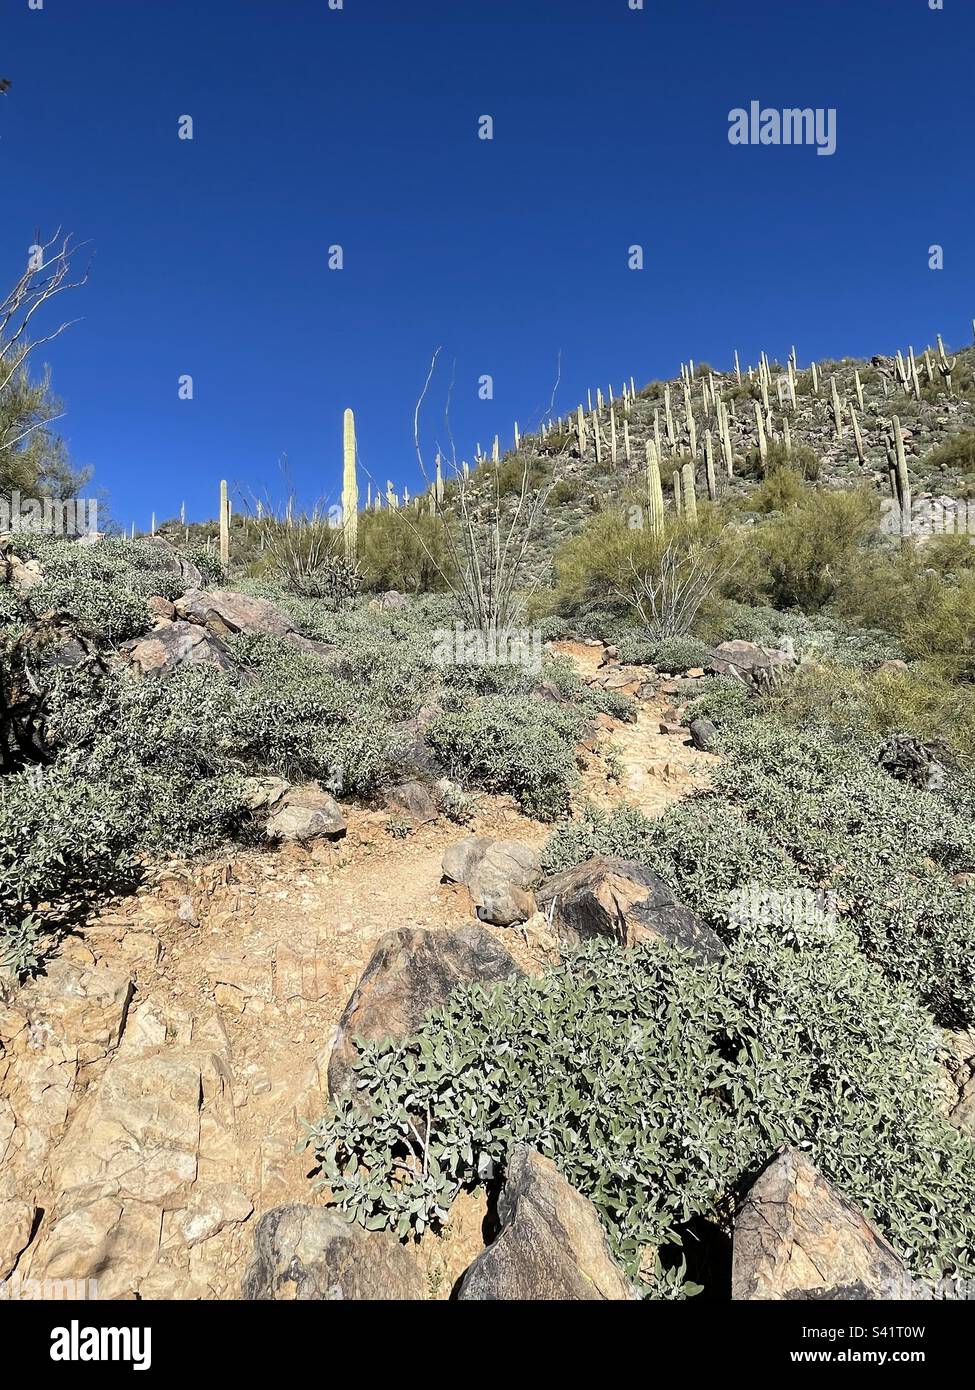 Adero Canyon Trail, tissage entre des buissons fragiles, escalade de la montagne dans la forêt de cactus de saguaro, ciel bleu brillant, Fountain Hills, Arizona, McDowell Mountain, Réserve du désert de Sonoran Banque D'Images